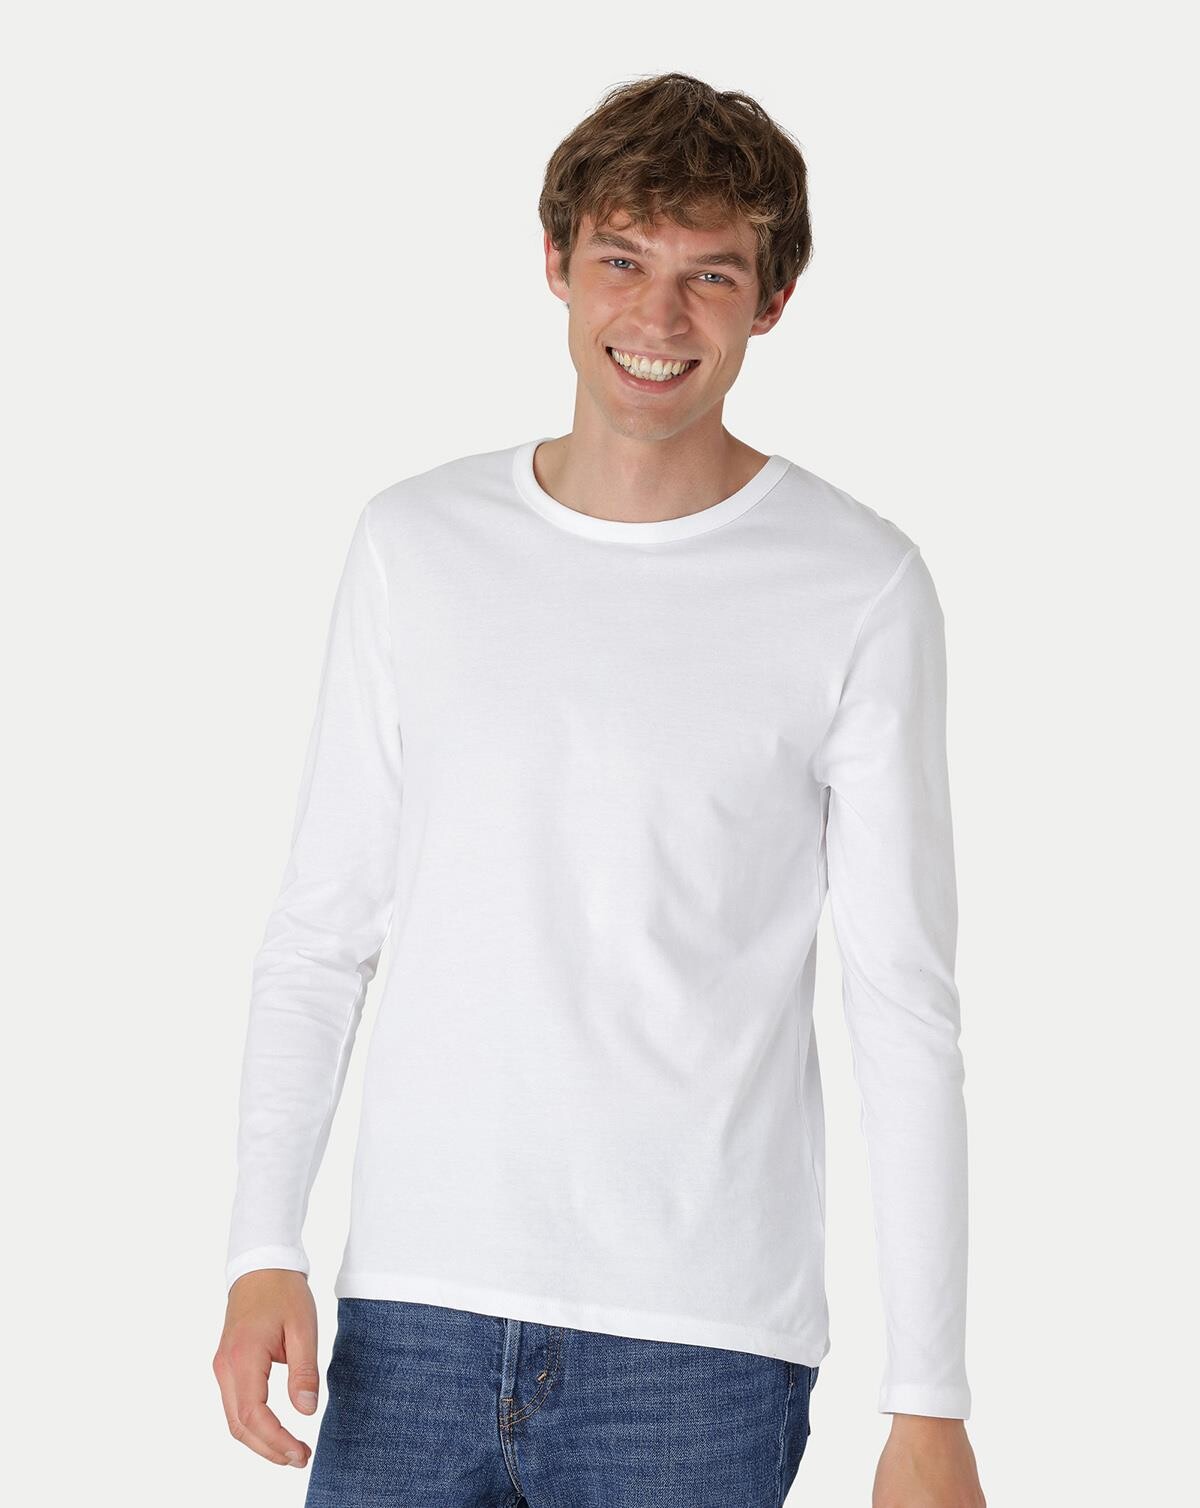 Neutral Økologisk Langærmet T-shirt (Hvid, L)